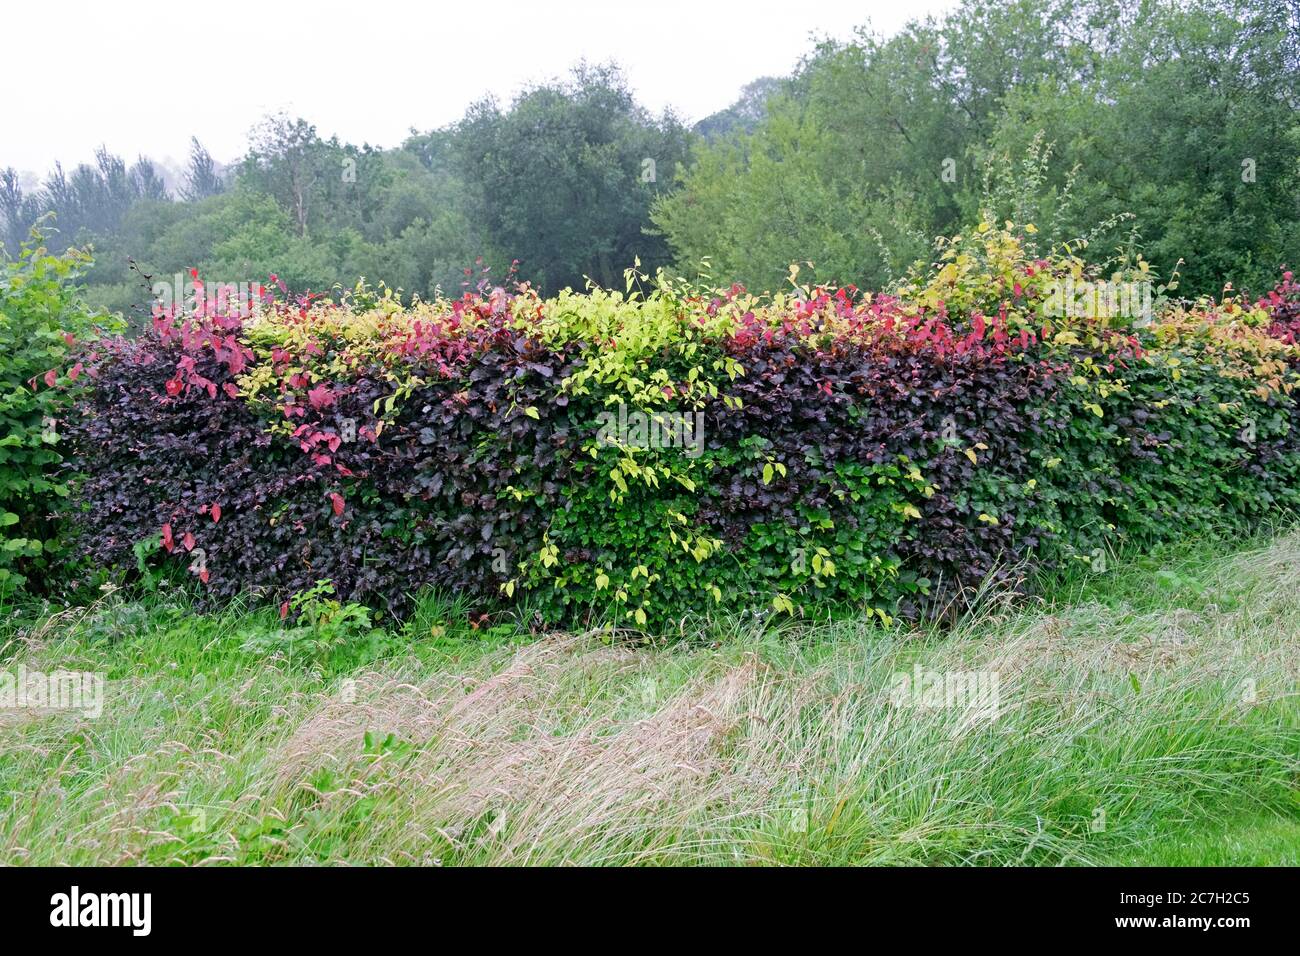 Hojas rojas y verdes de una cobertura de haya en julio, verano y hierba larga de césped permitido crecer en un día lluvioso en Carmarthenshire Wales Reino Unido KATHY DEWITT Foto de stock